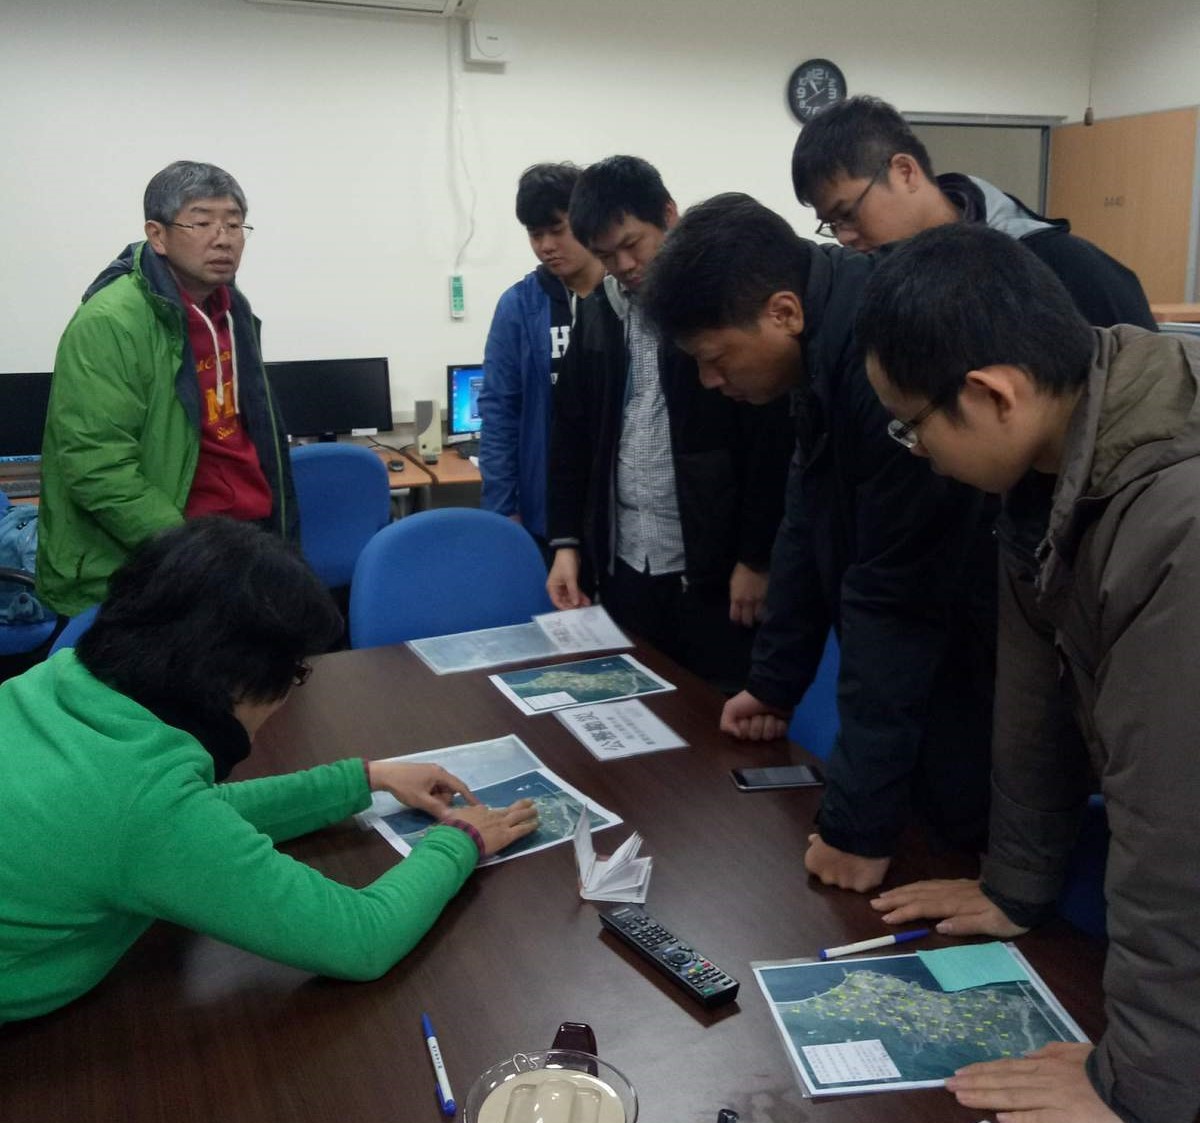 張文彥老師與學生研討地震問題